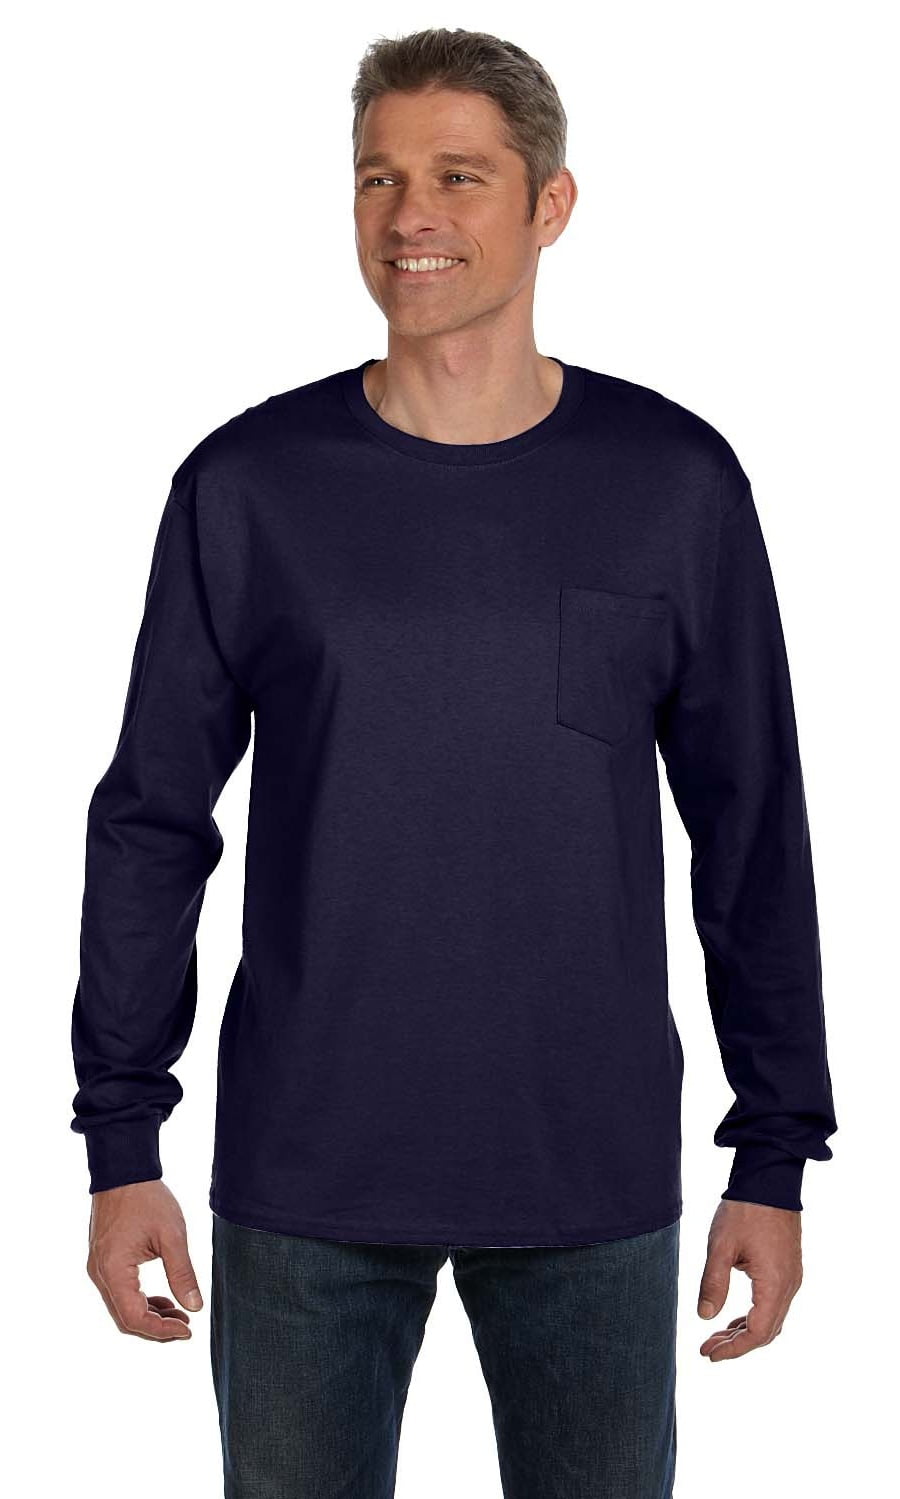 The Hanes Mens 61 oz. Tag less Long Sleeve Pocket T-Shirt - Navy - m ...